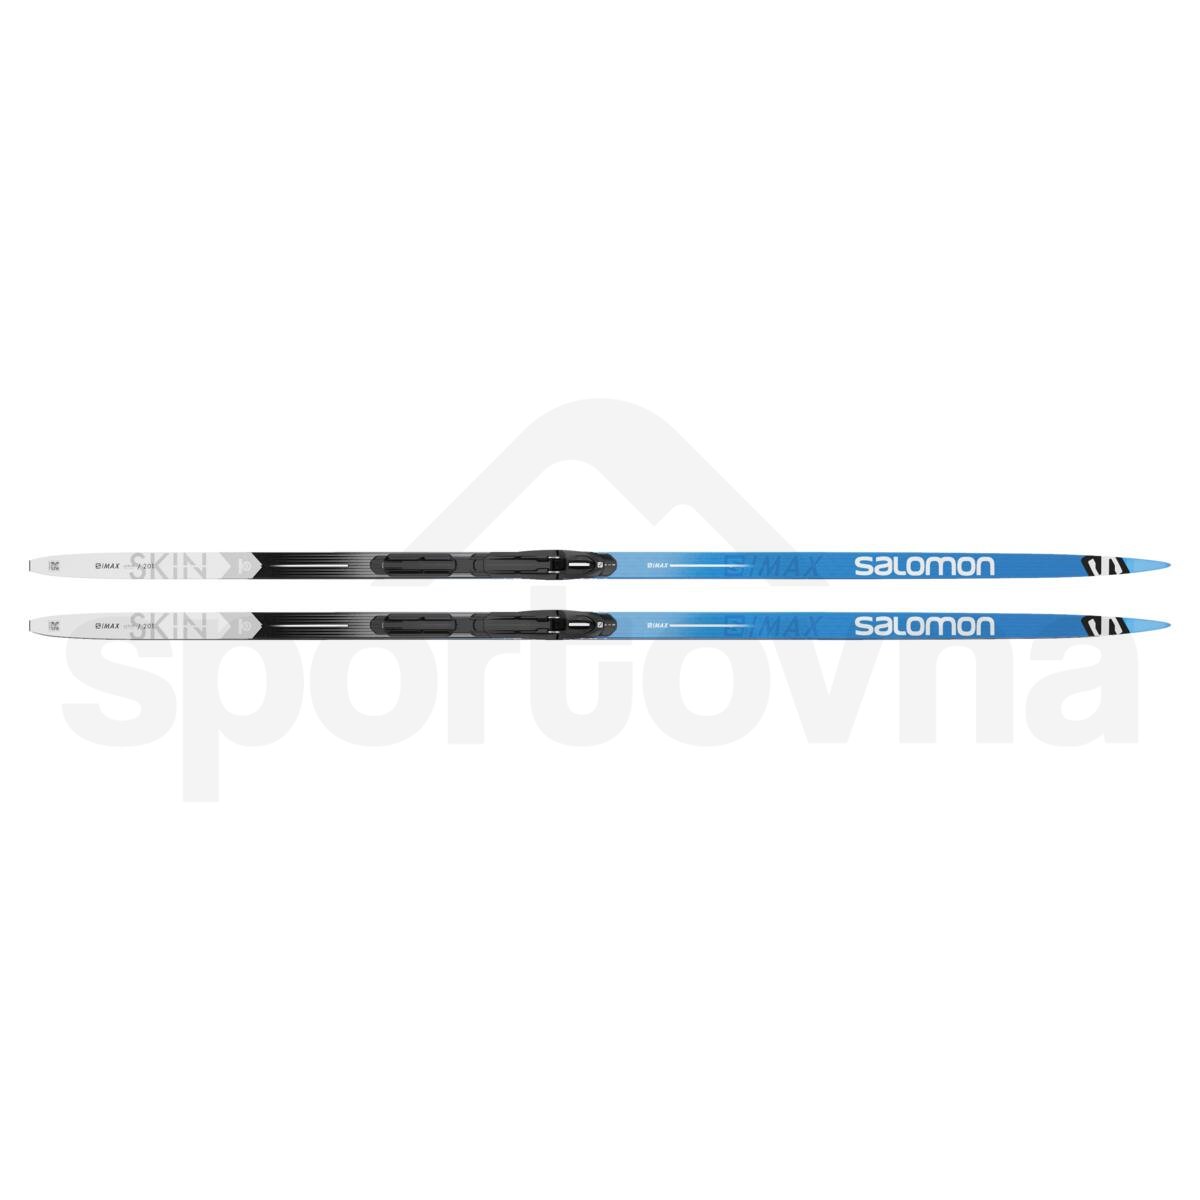 Běžky set Salomon S/MAX eSKIN X-Hard + Vázání PROLINK SHIFT IN - modrá/černá